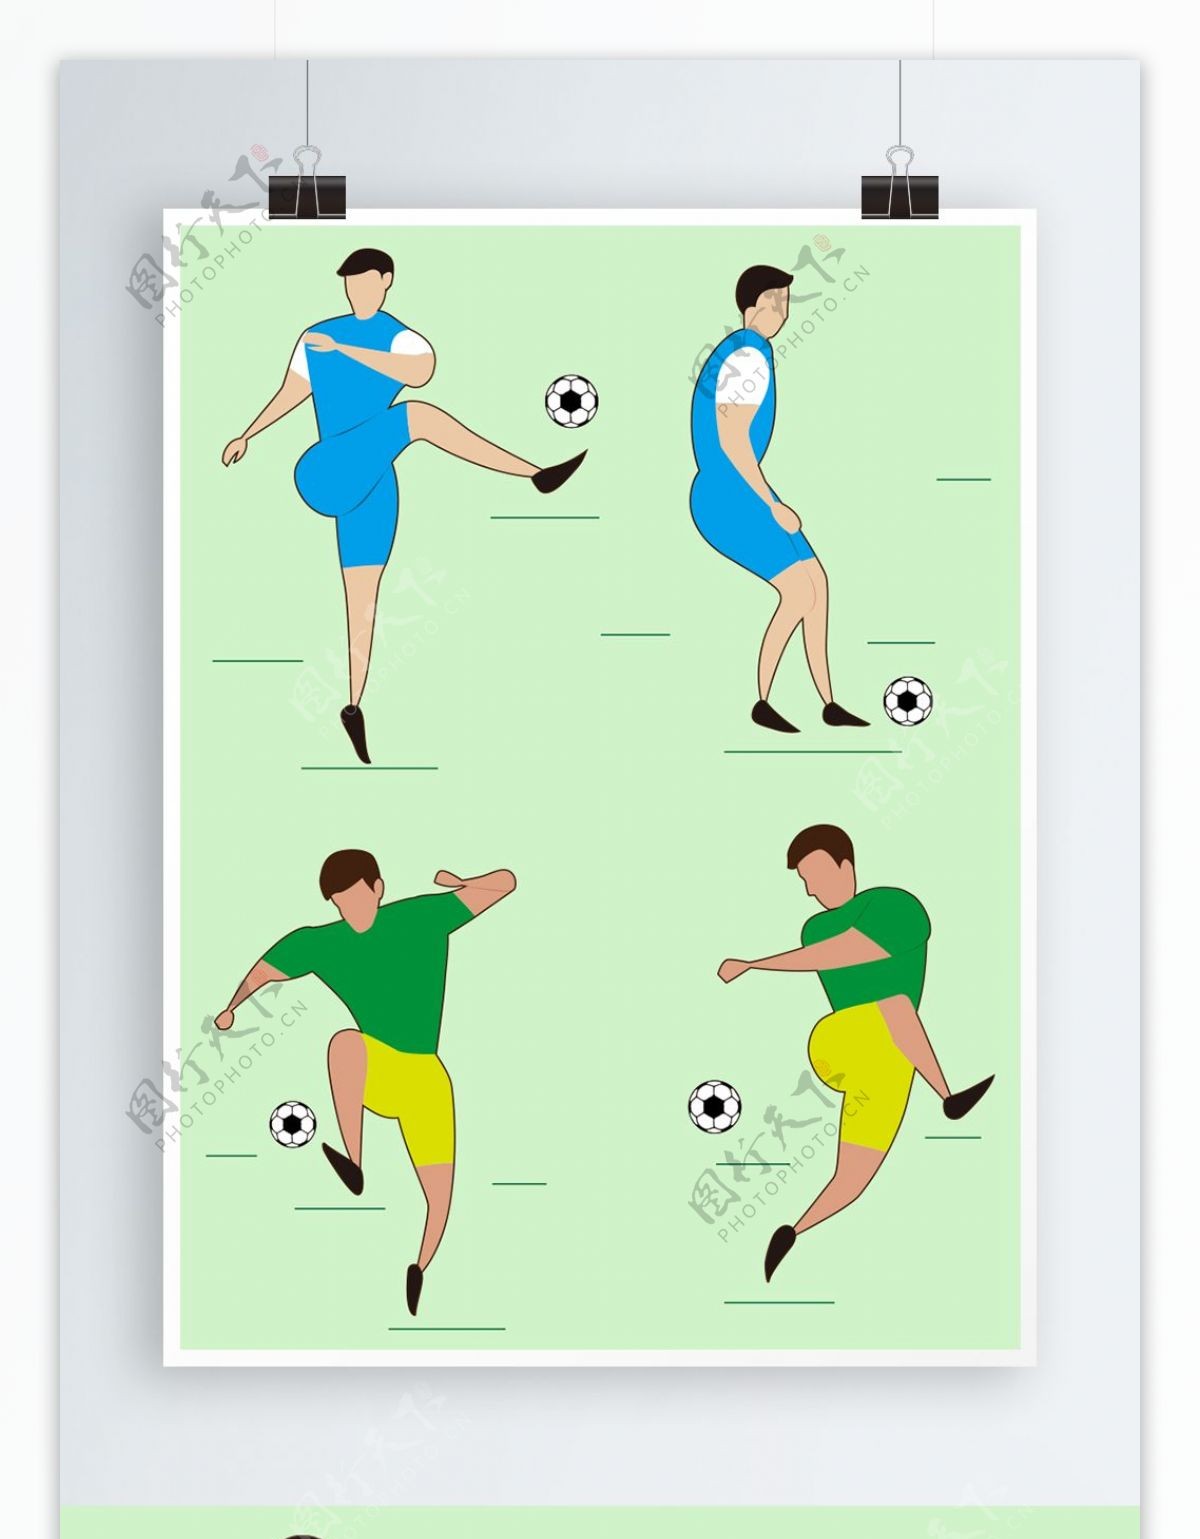 世界杯足球运动员踢球动作原创插画设计元素